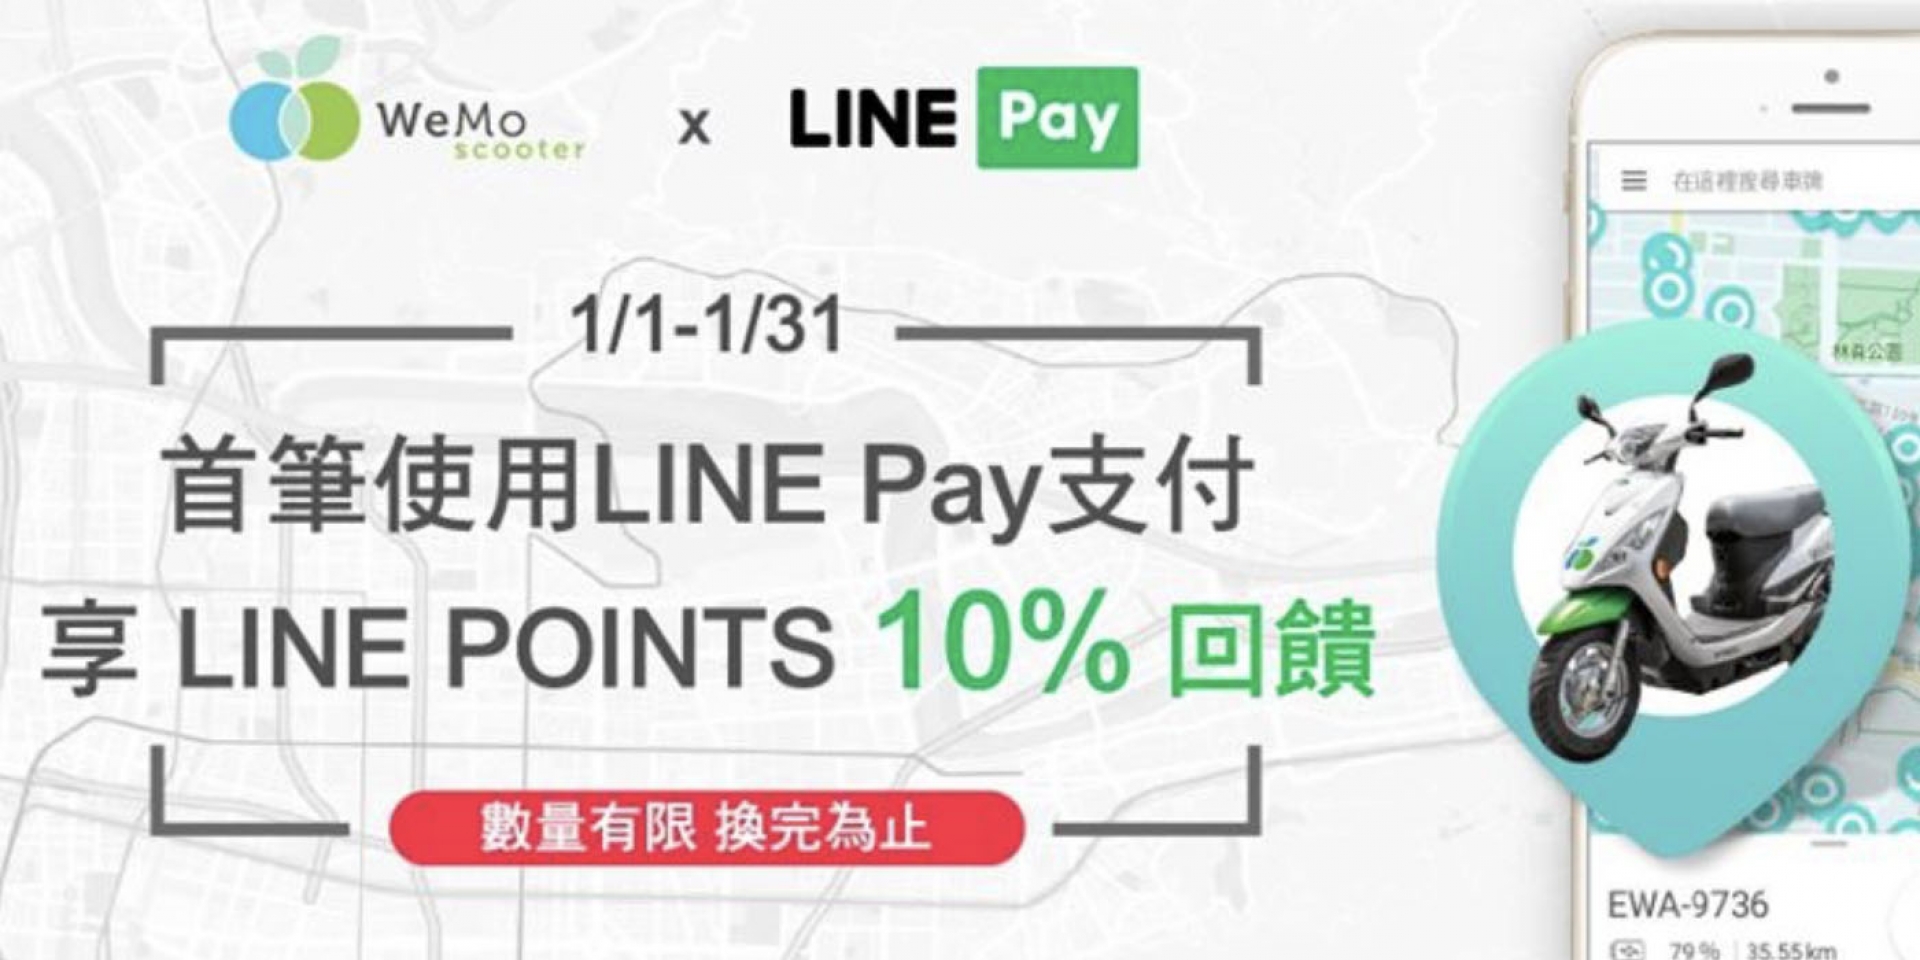 官方新聞稿。WeMo Scooter加入LINE Pay，即日起騎車享LINE POINTS 10%回饋！